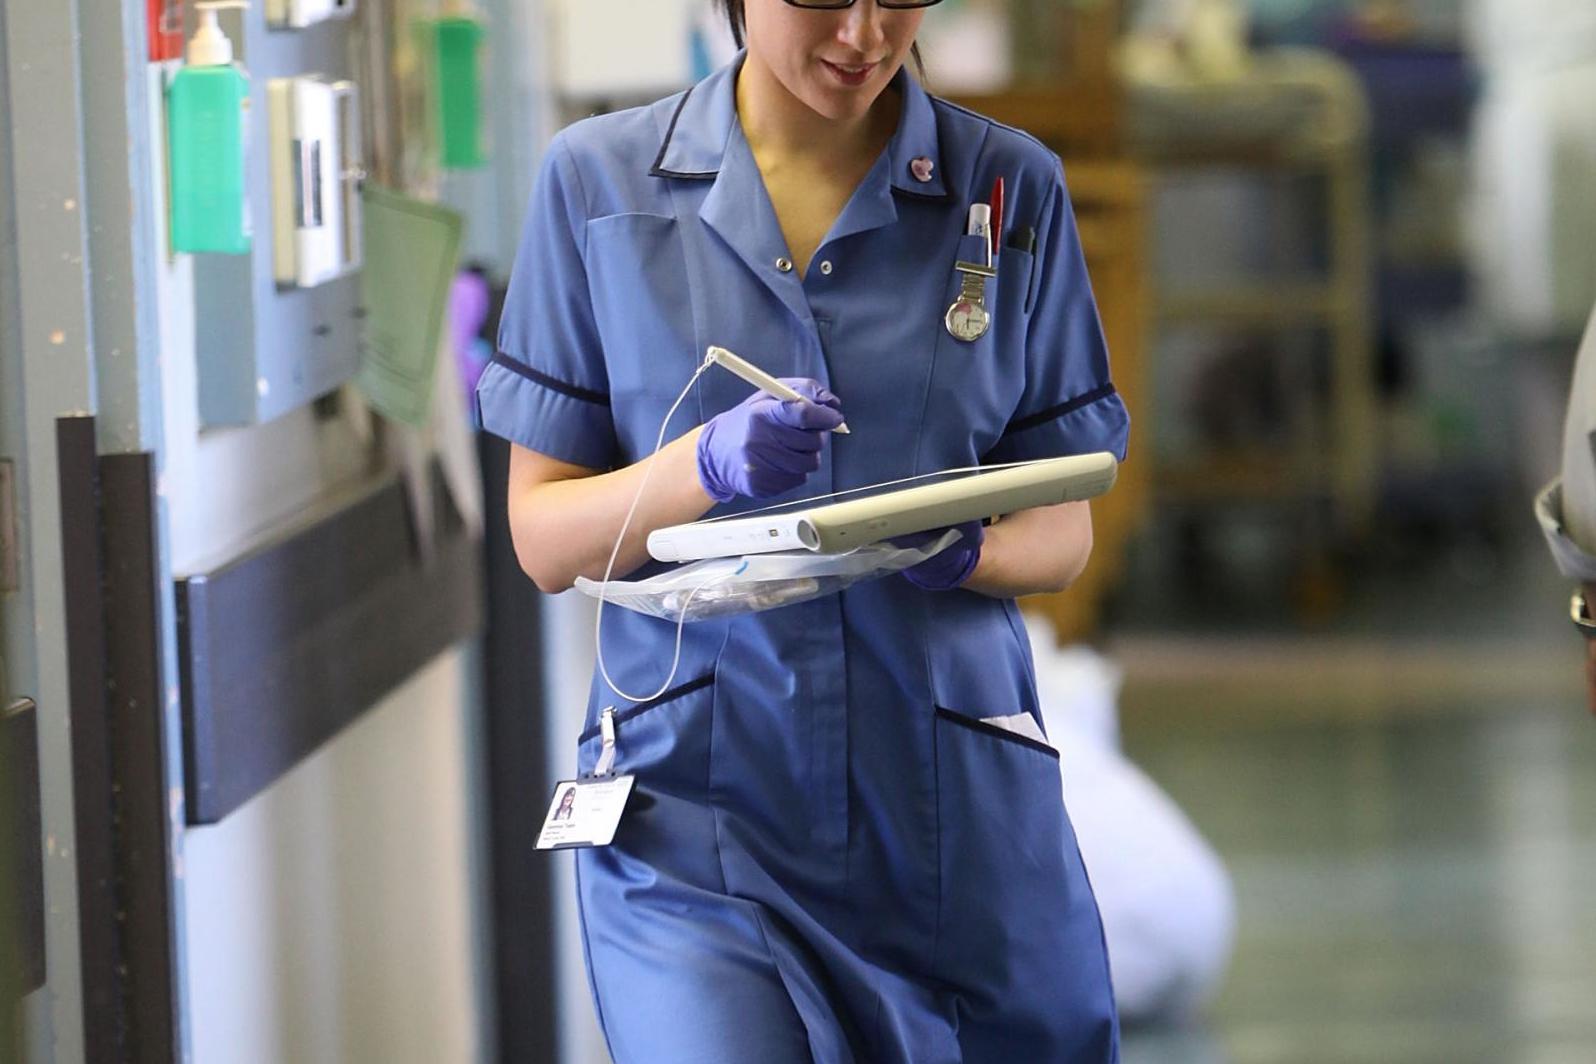 Δέλεαρ εκπτώσεις σε σούπερ μάρκετ σε νοσηλευτές για να παραμείνουν στο NHS